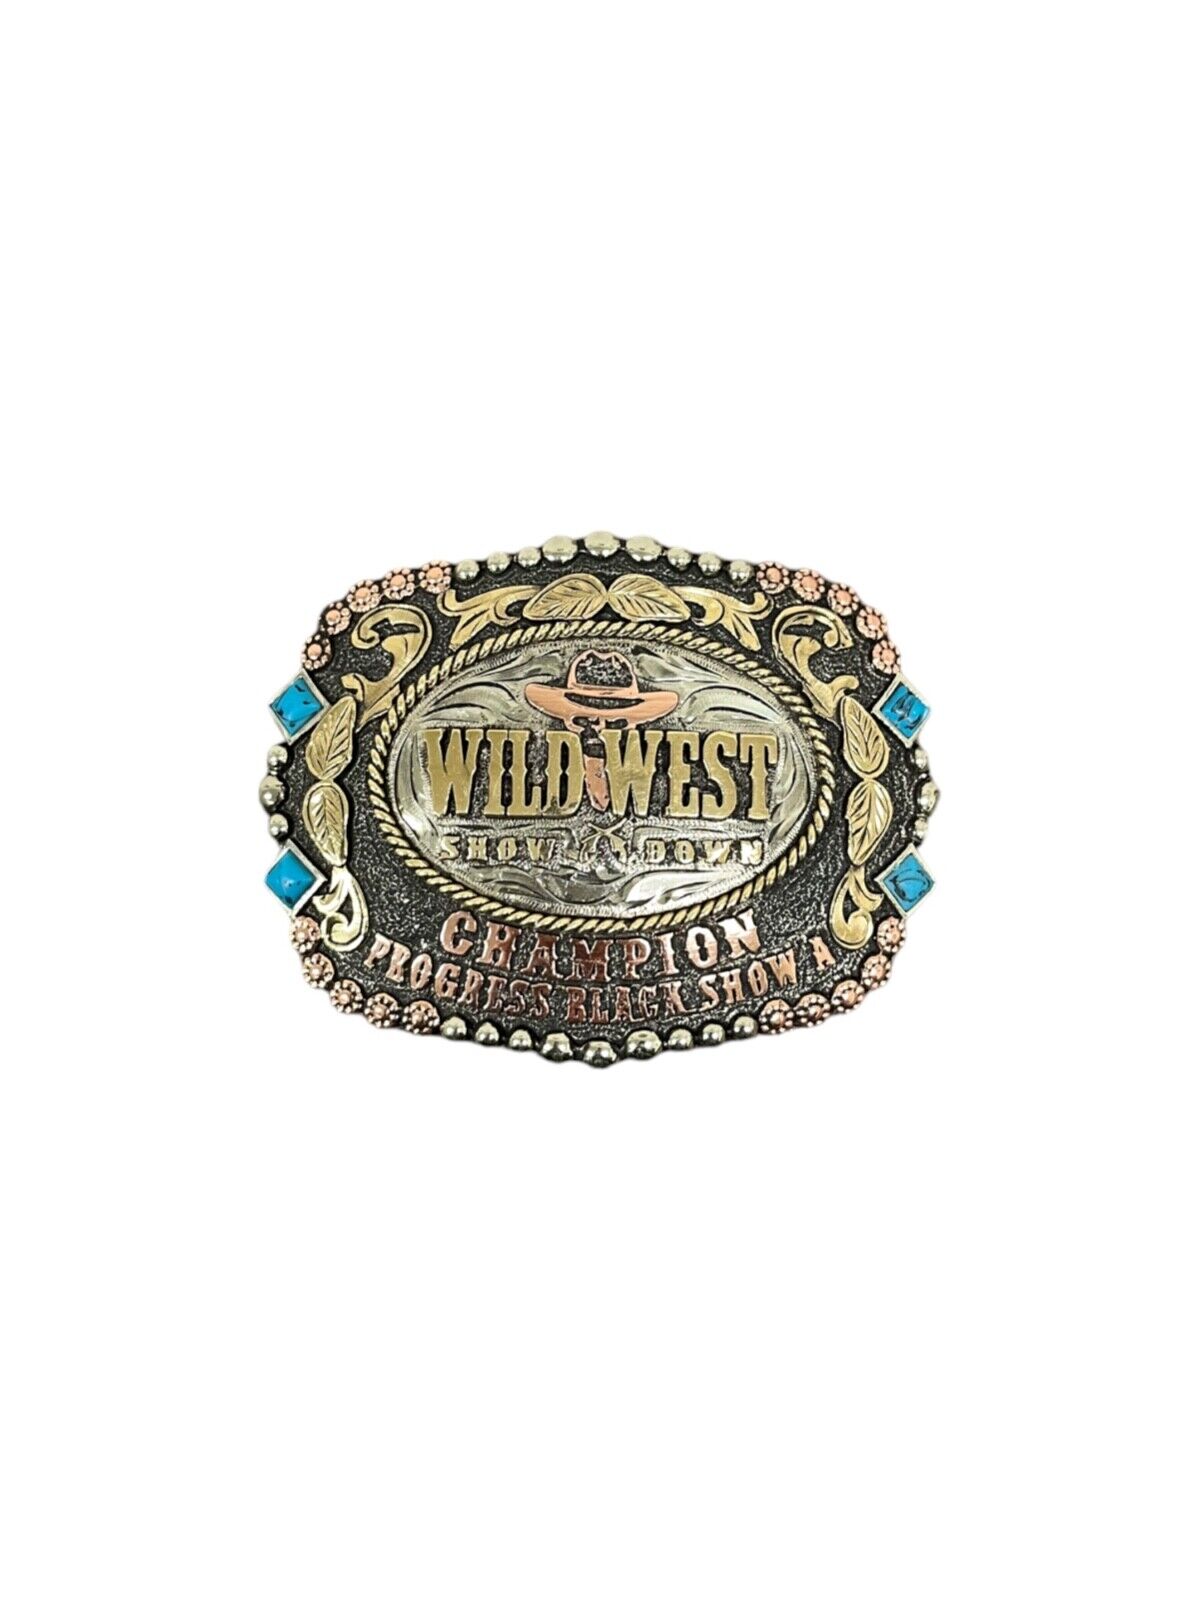 Wild West Showdown Champion Buckle